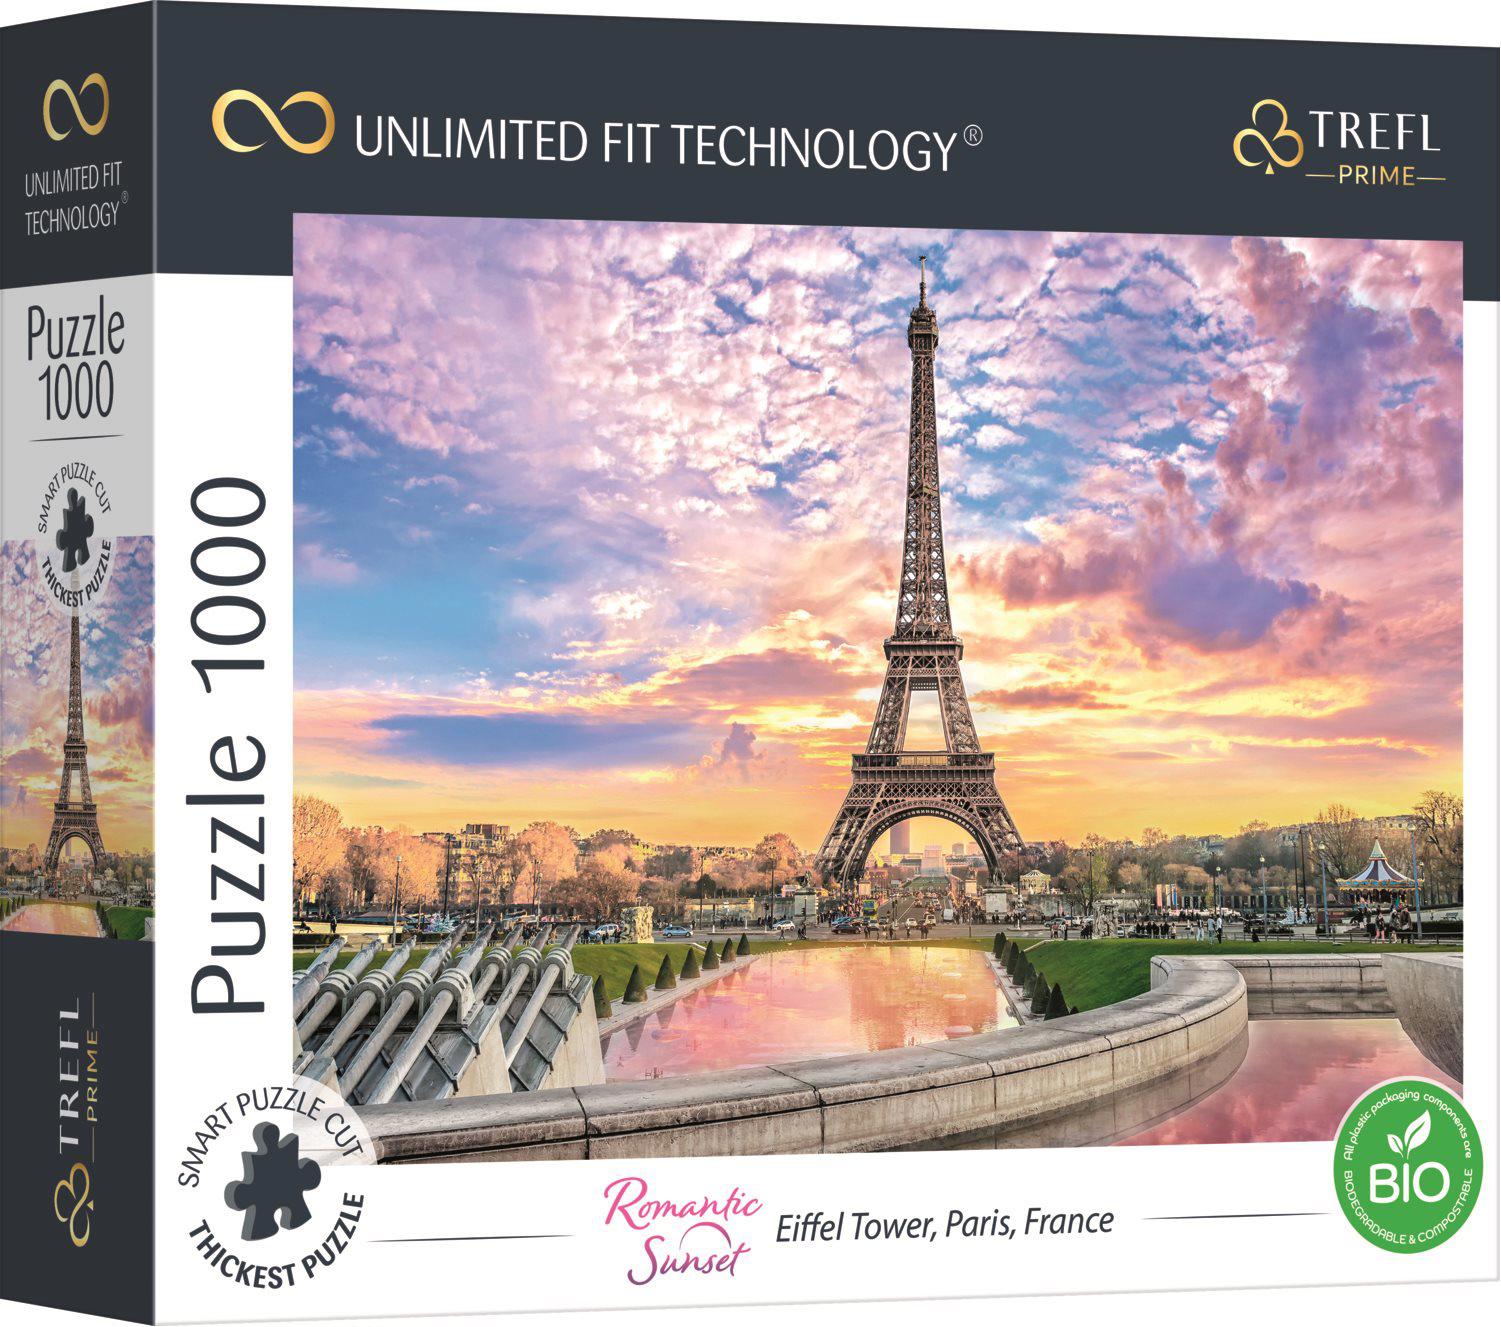 Puzzle Torre Eiffel, París, Francia UFT